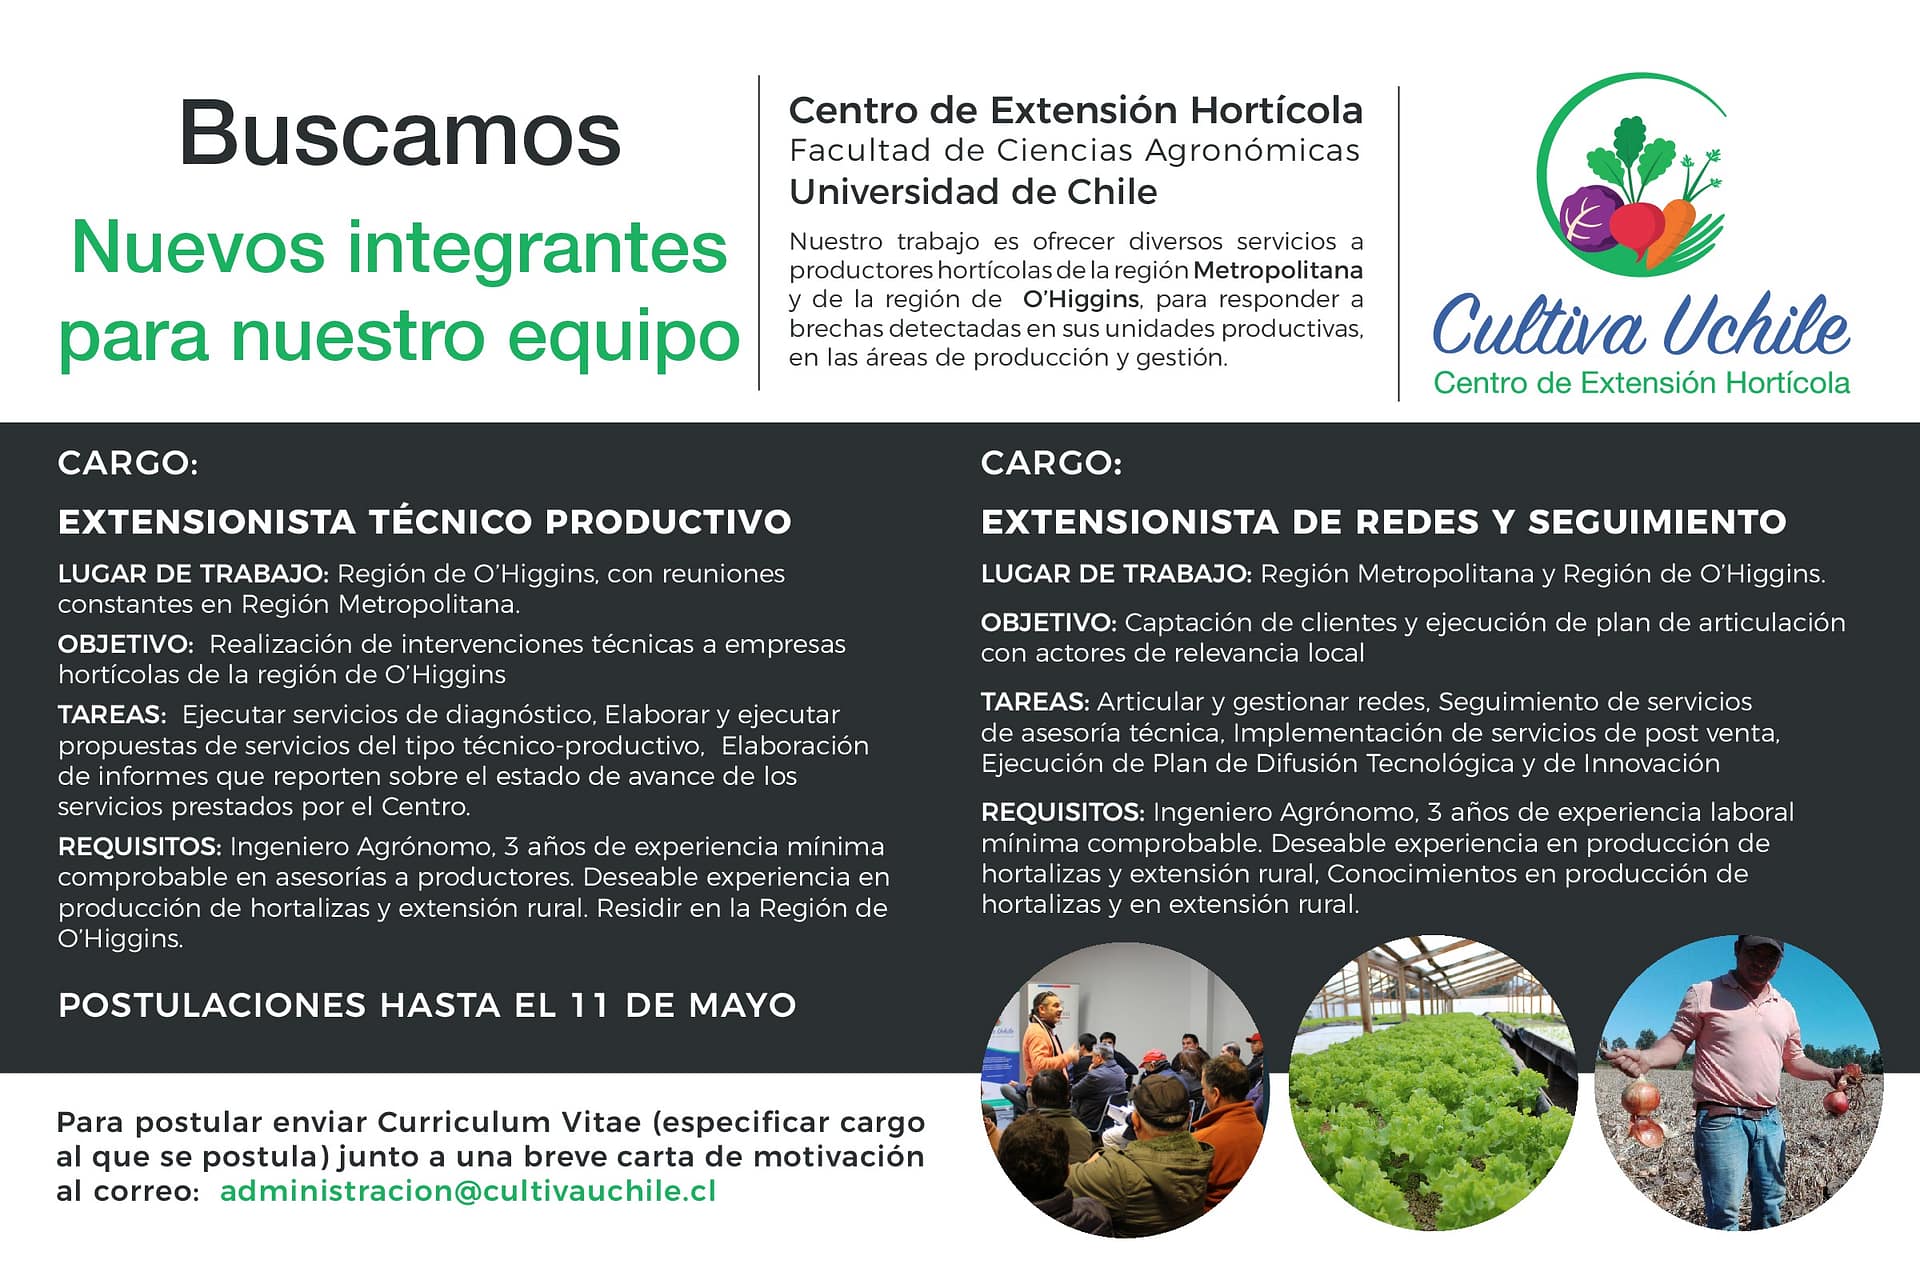 Buscamos Nuevos Integrantes para Cultiva Uchile